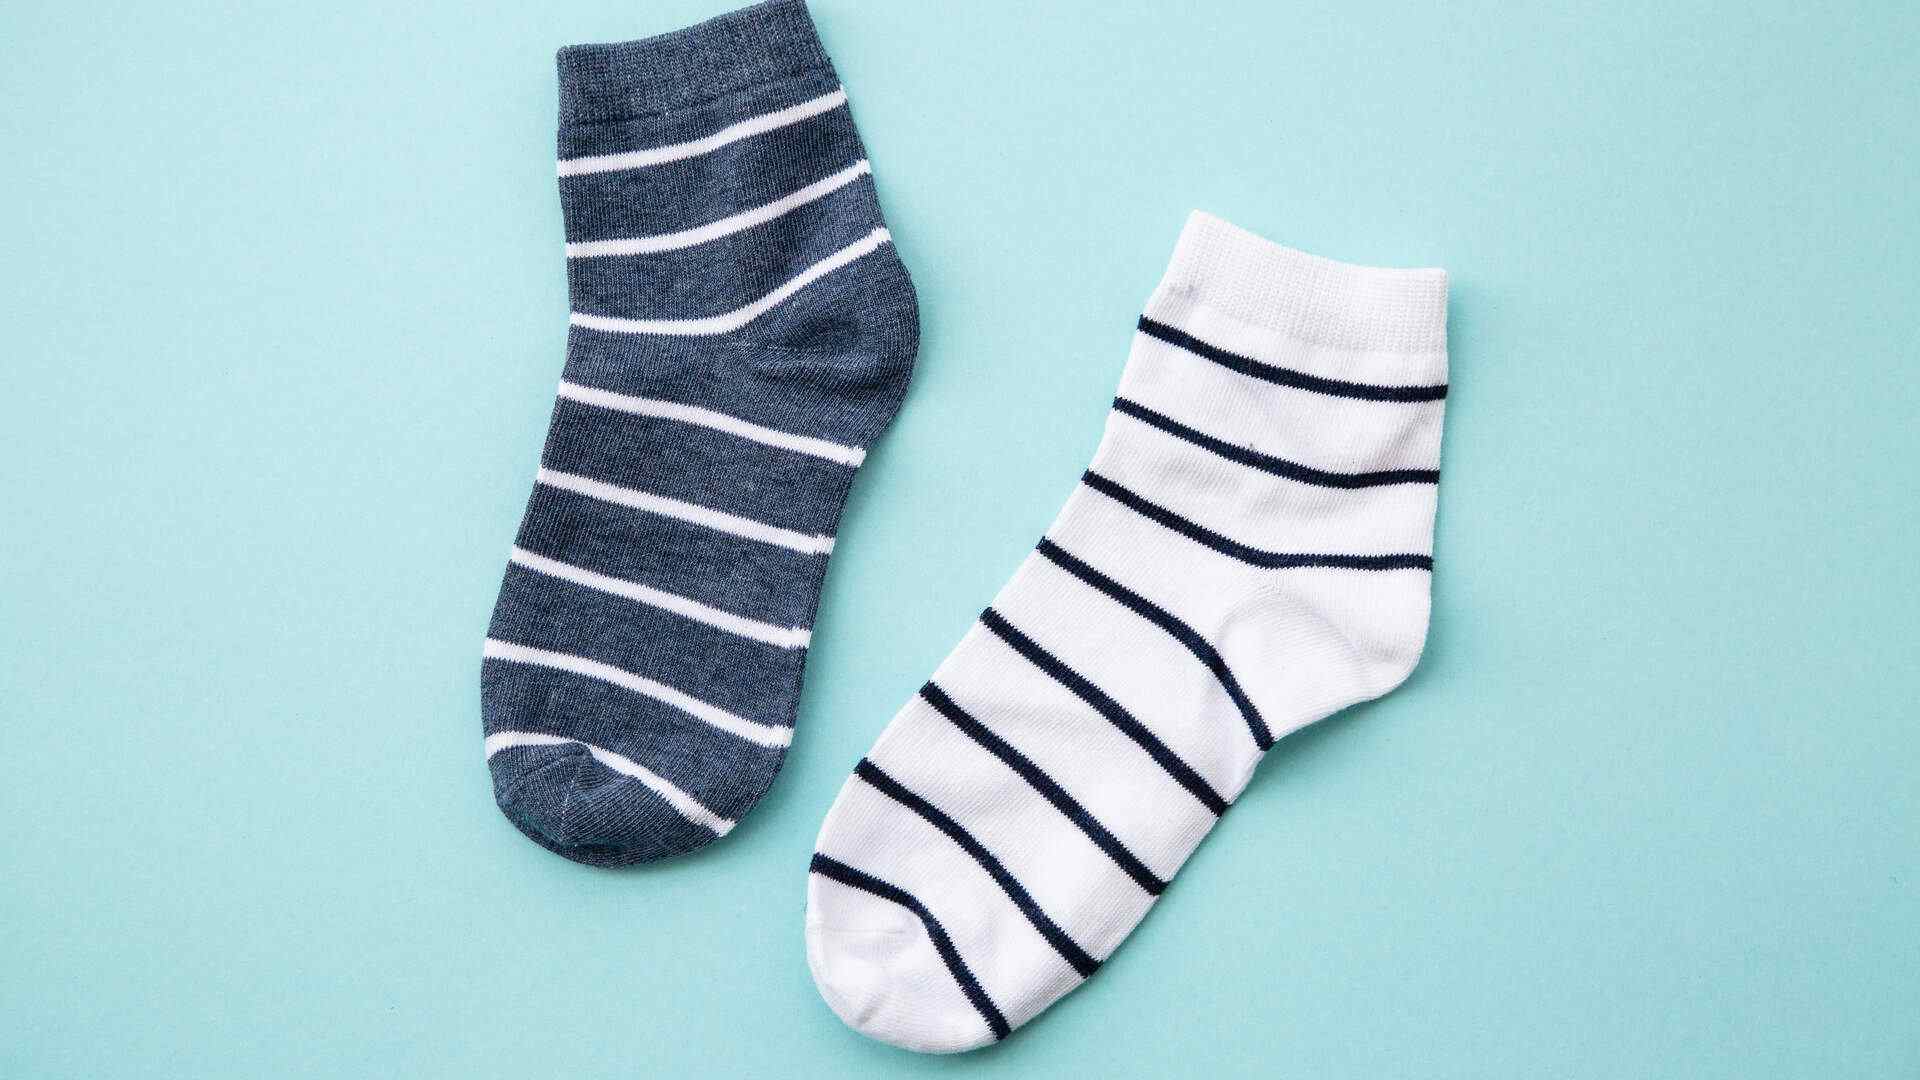 5 maneras creativas de reciclar tus calcetines rotos o gastados